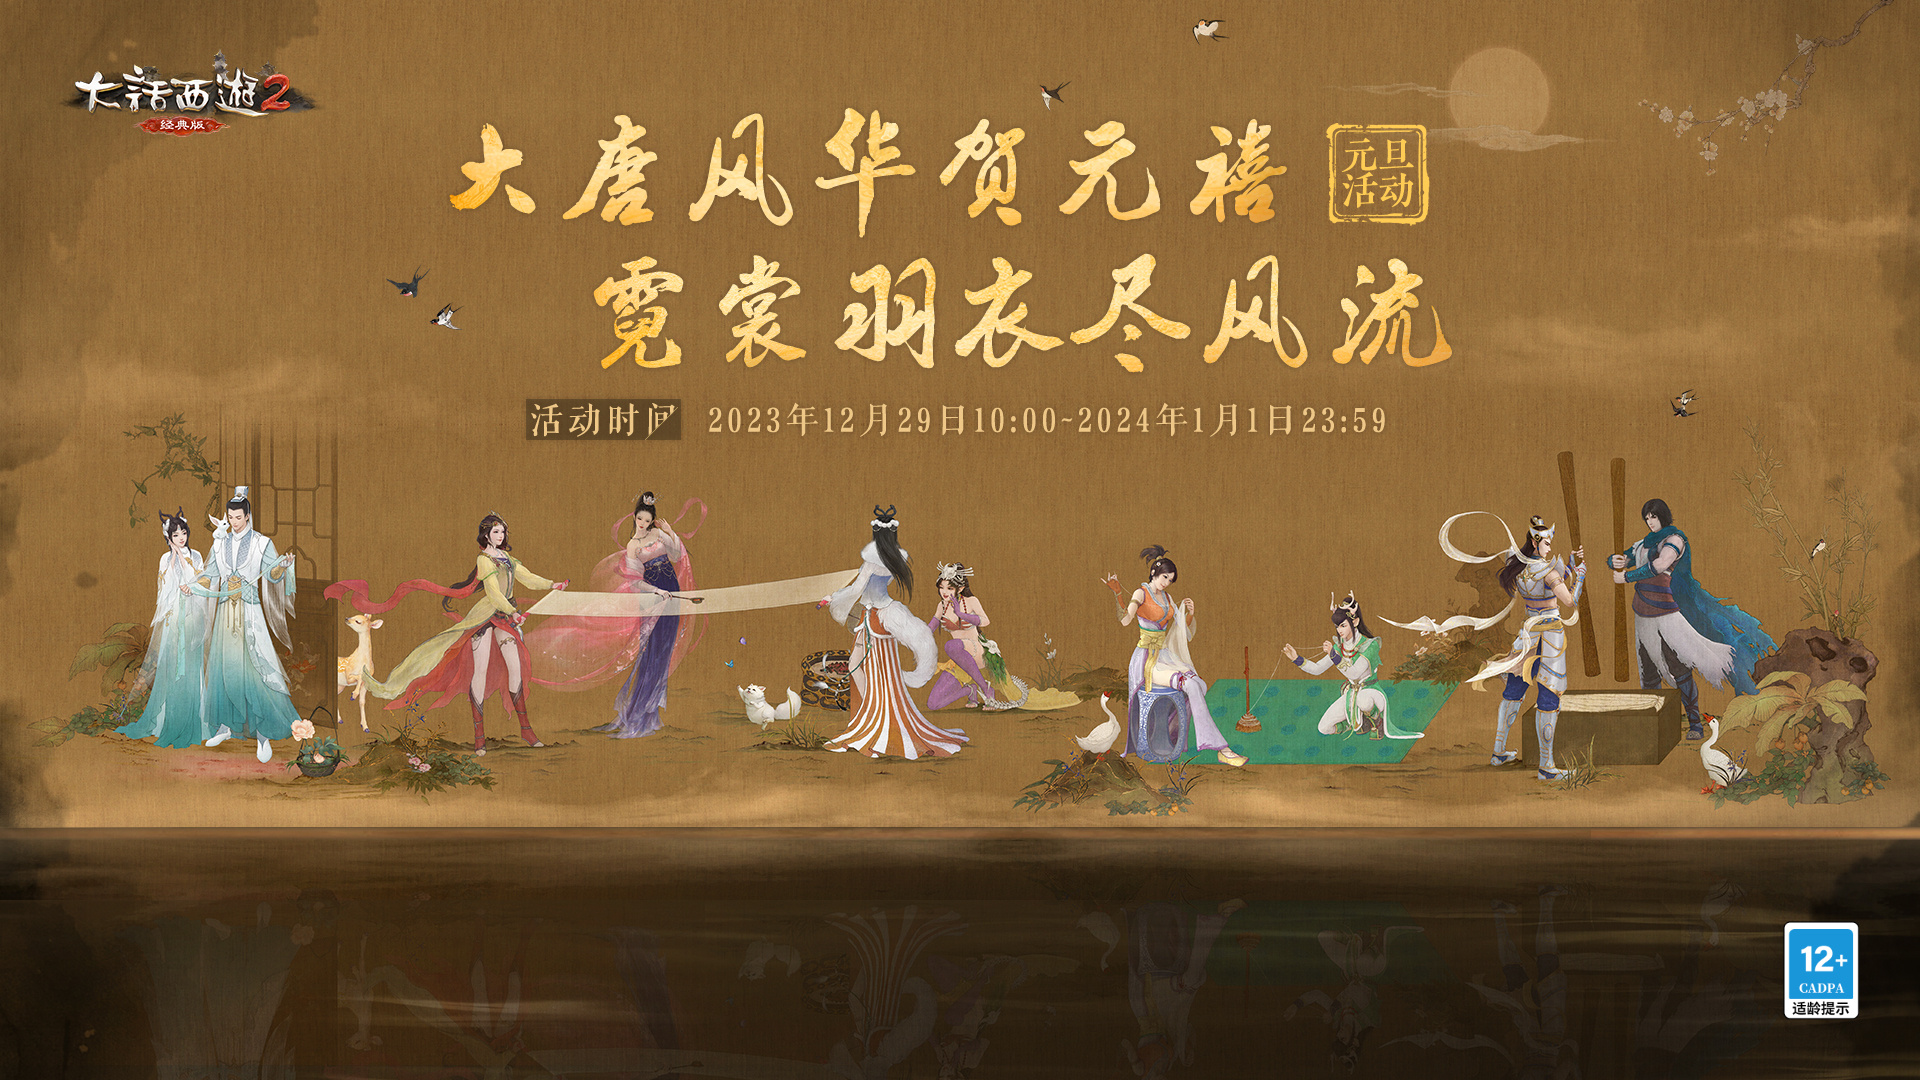 《大话西游2经典版》元旦活动预热 与传统文化的融合盛宴